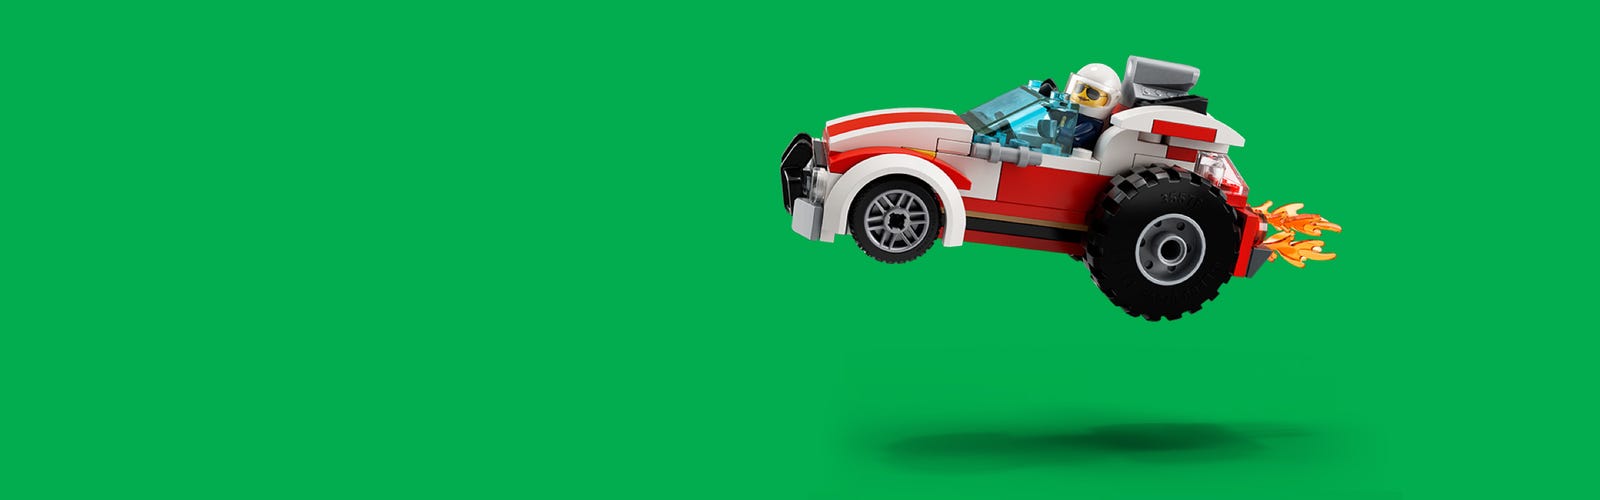 En promotion, ce LEGO Technic complexe est l'une des plus belles voitures  de course à construire en briques ! 